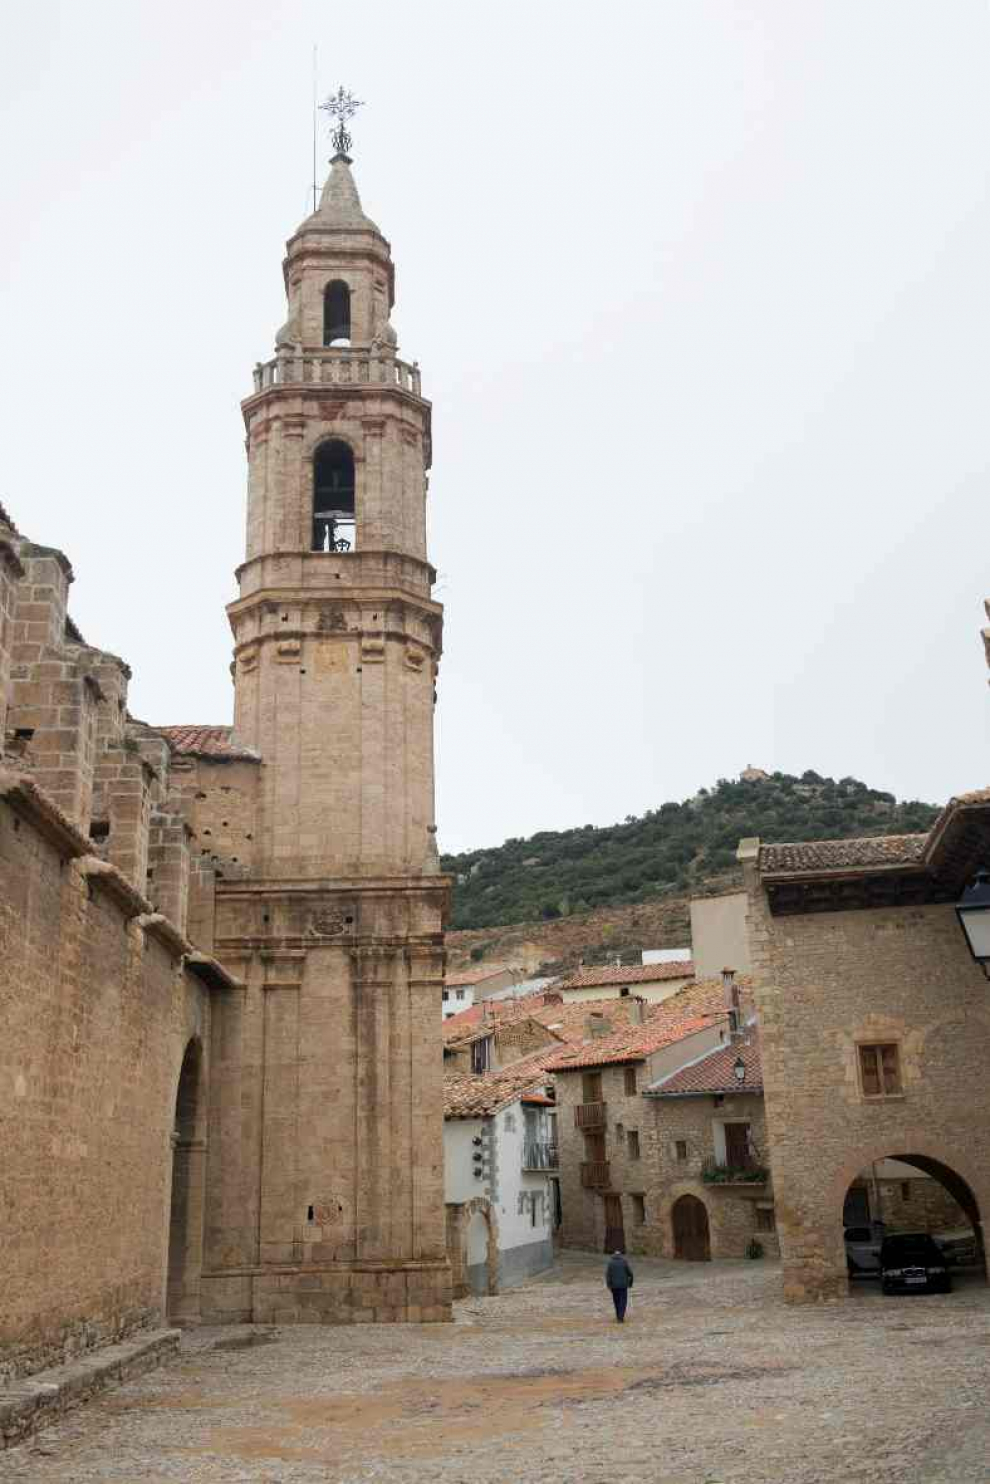 Calle de Tronchón (Teruel)